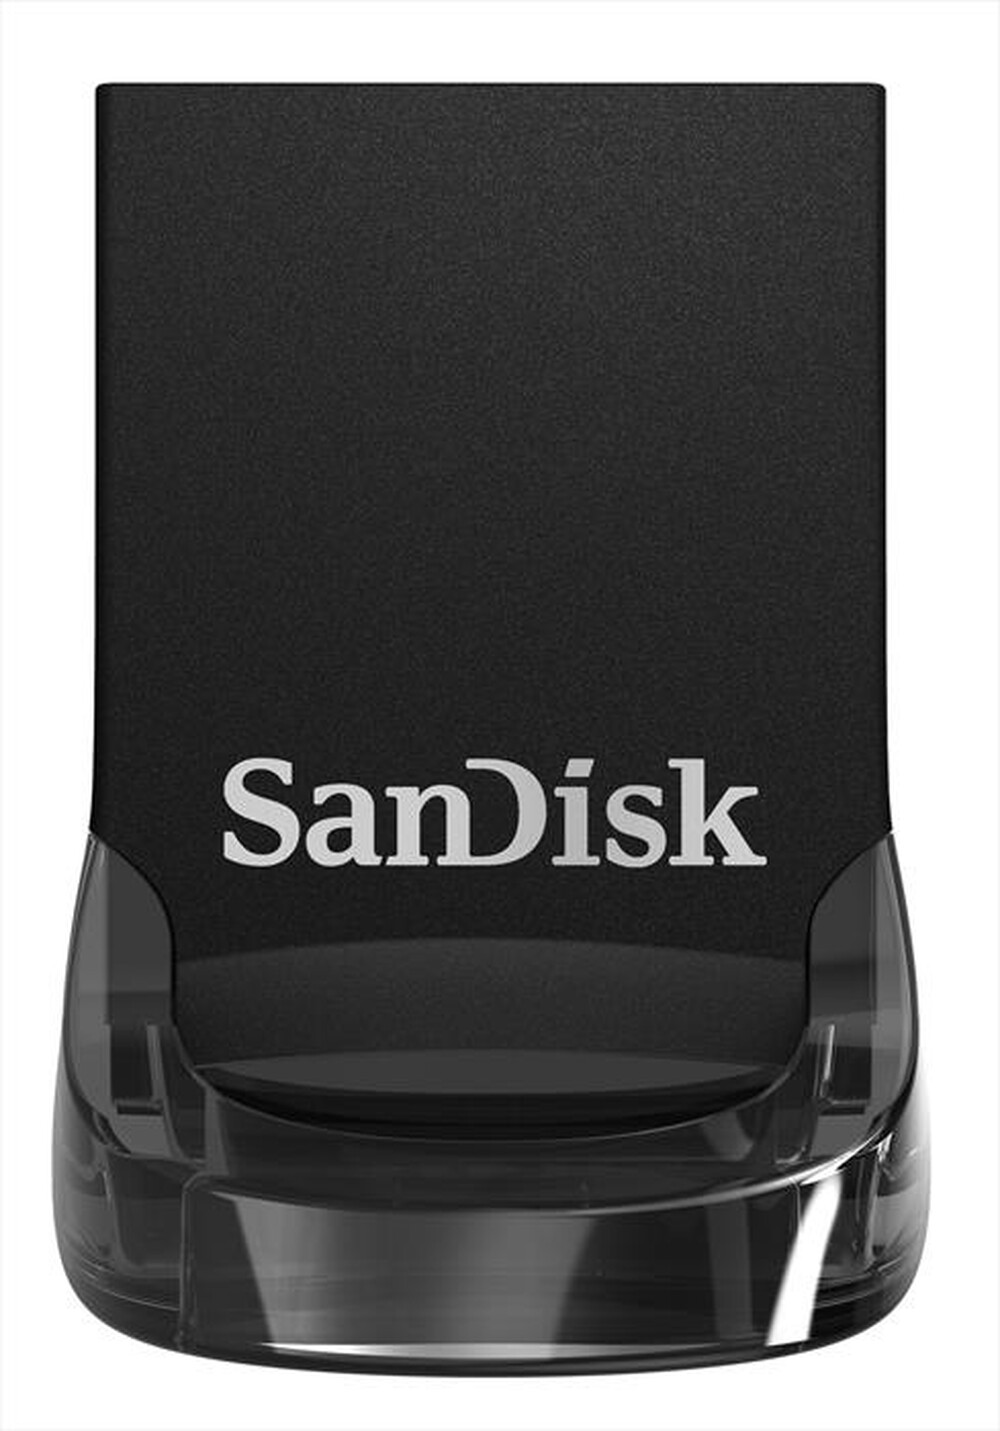 "SANDISK - USB ULTRA FIT 3.1 16GB"